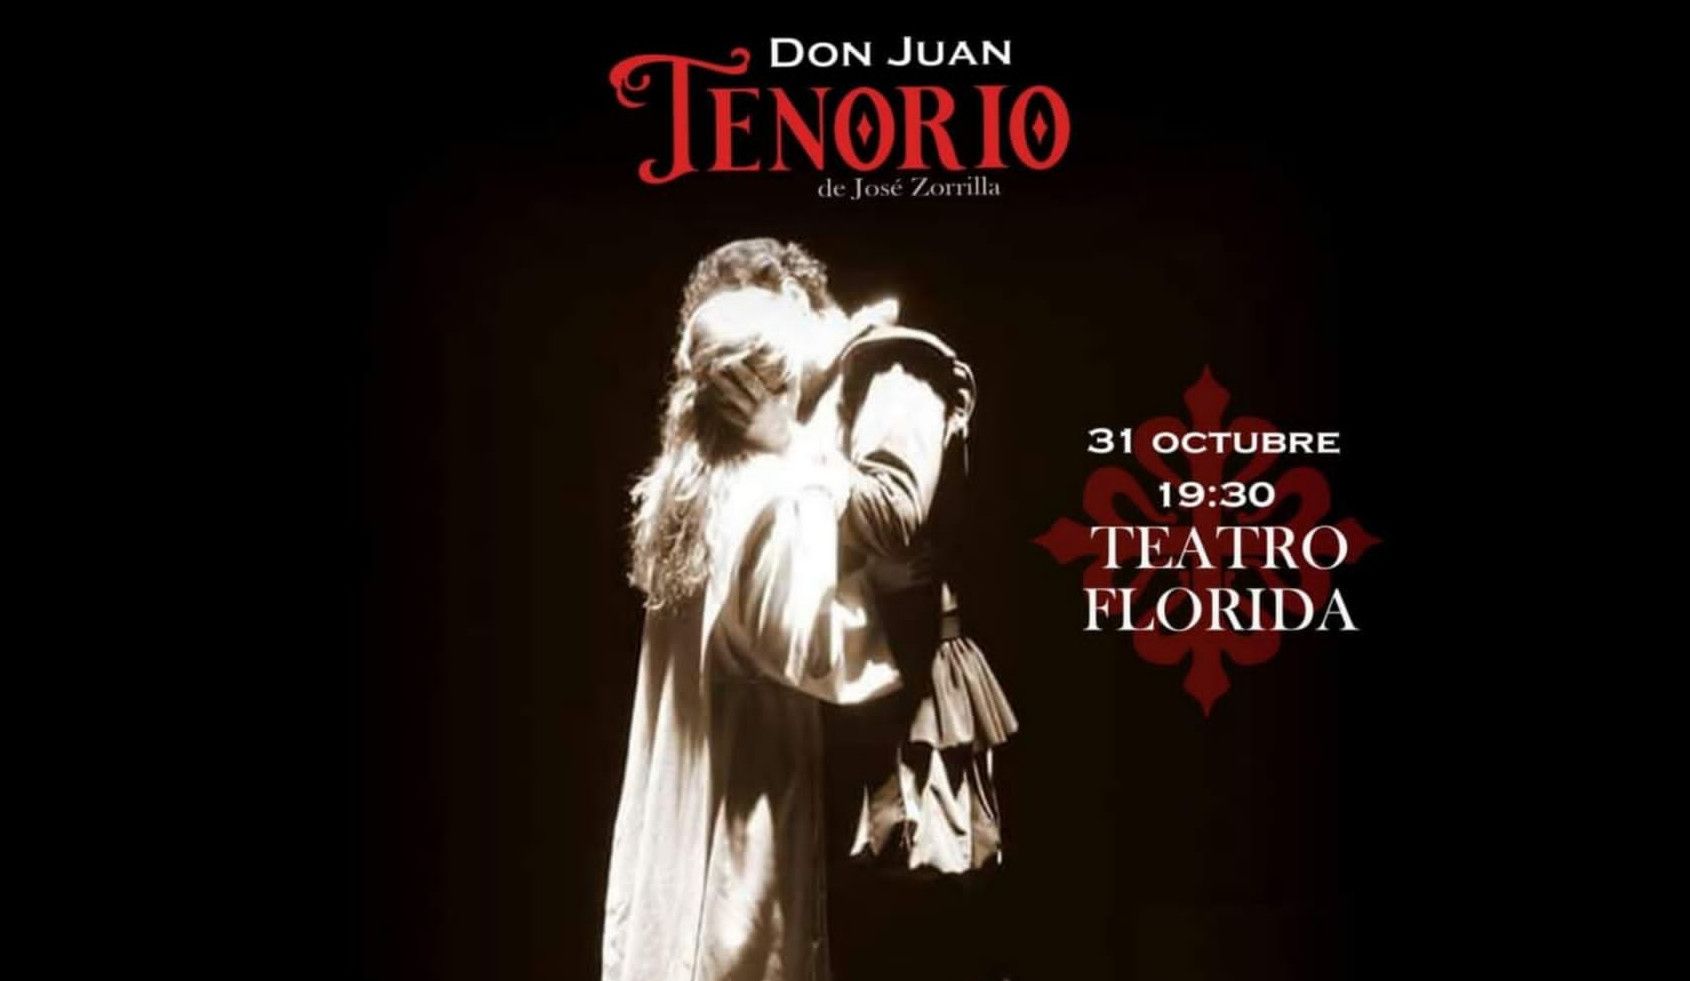 Cartel de la representación de Don Juan Tenorio en Algeciras.